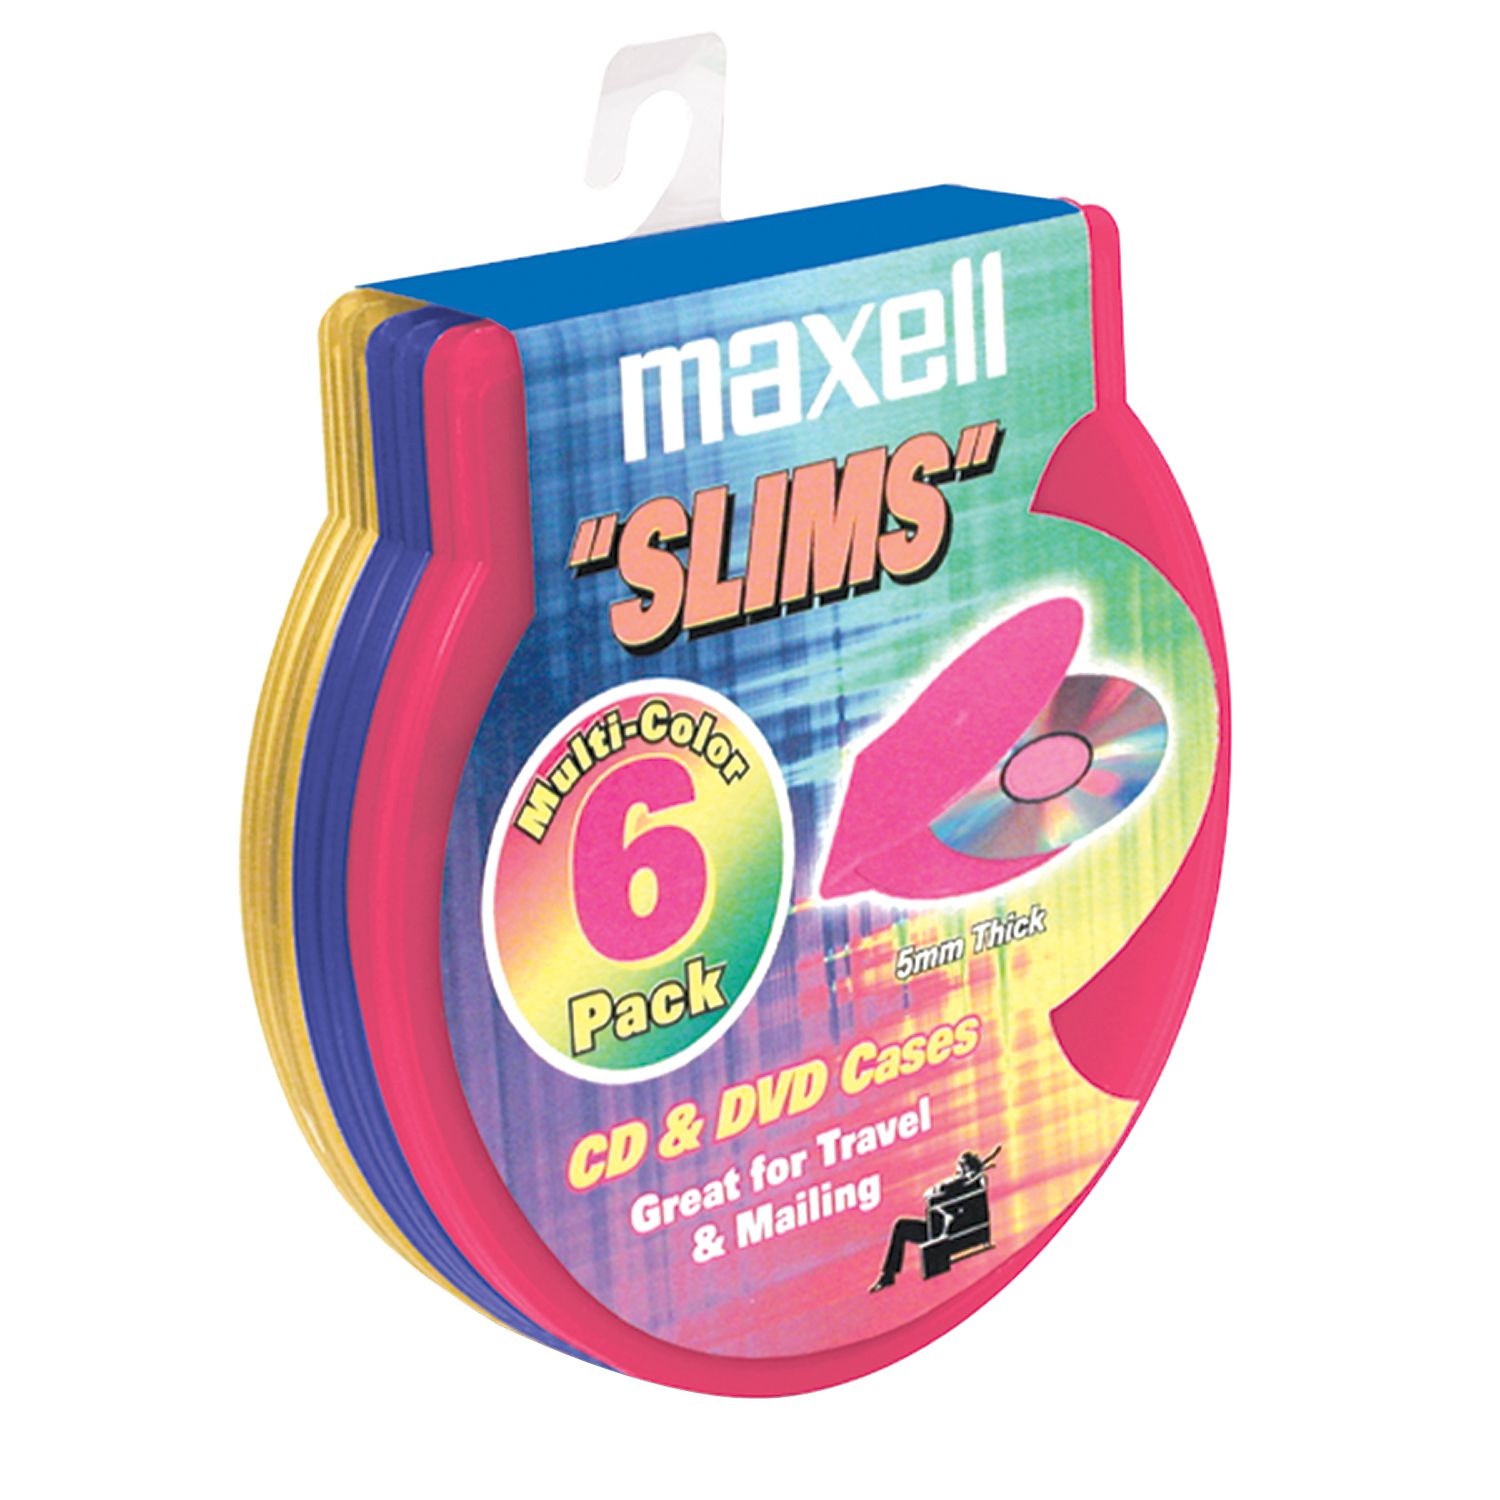 Maxell 190082 Slims 5mm C-Shell Cases, 6-pk. / CD DVD Cases